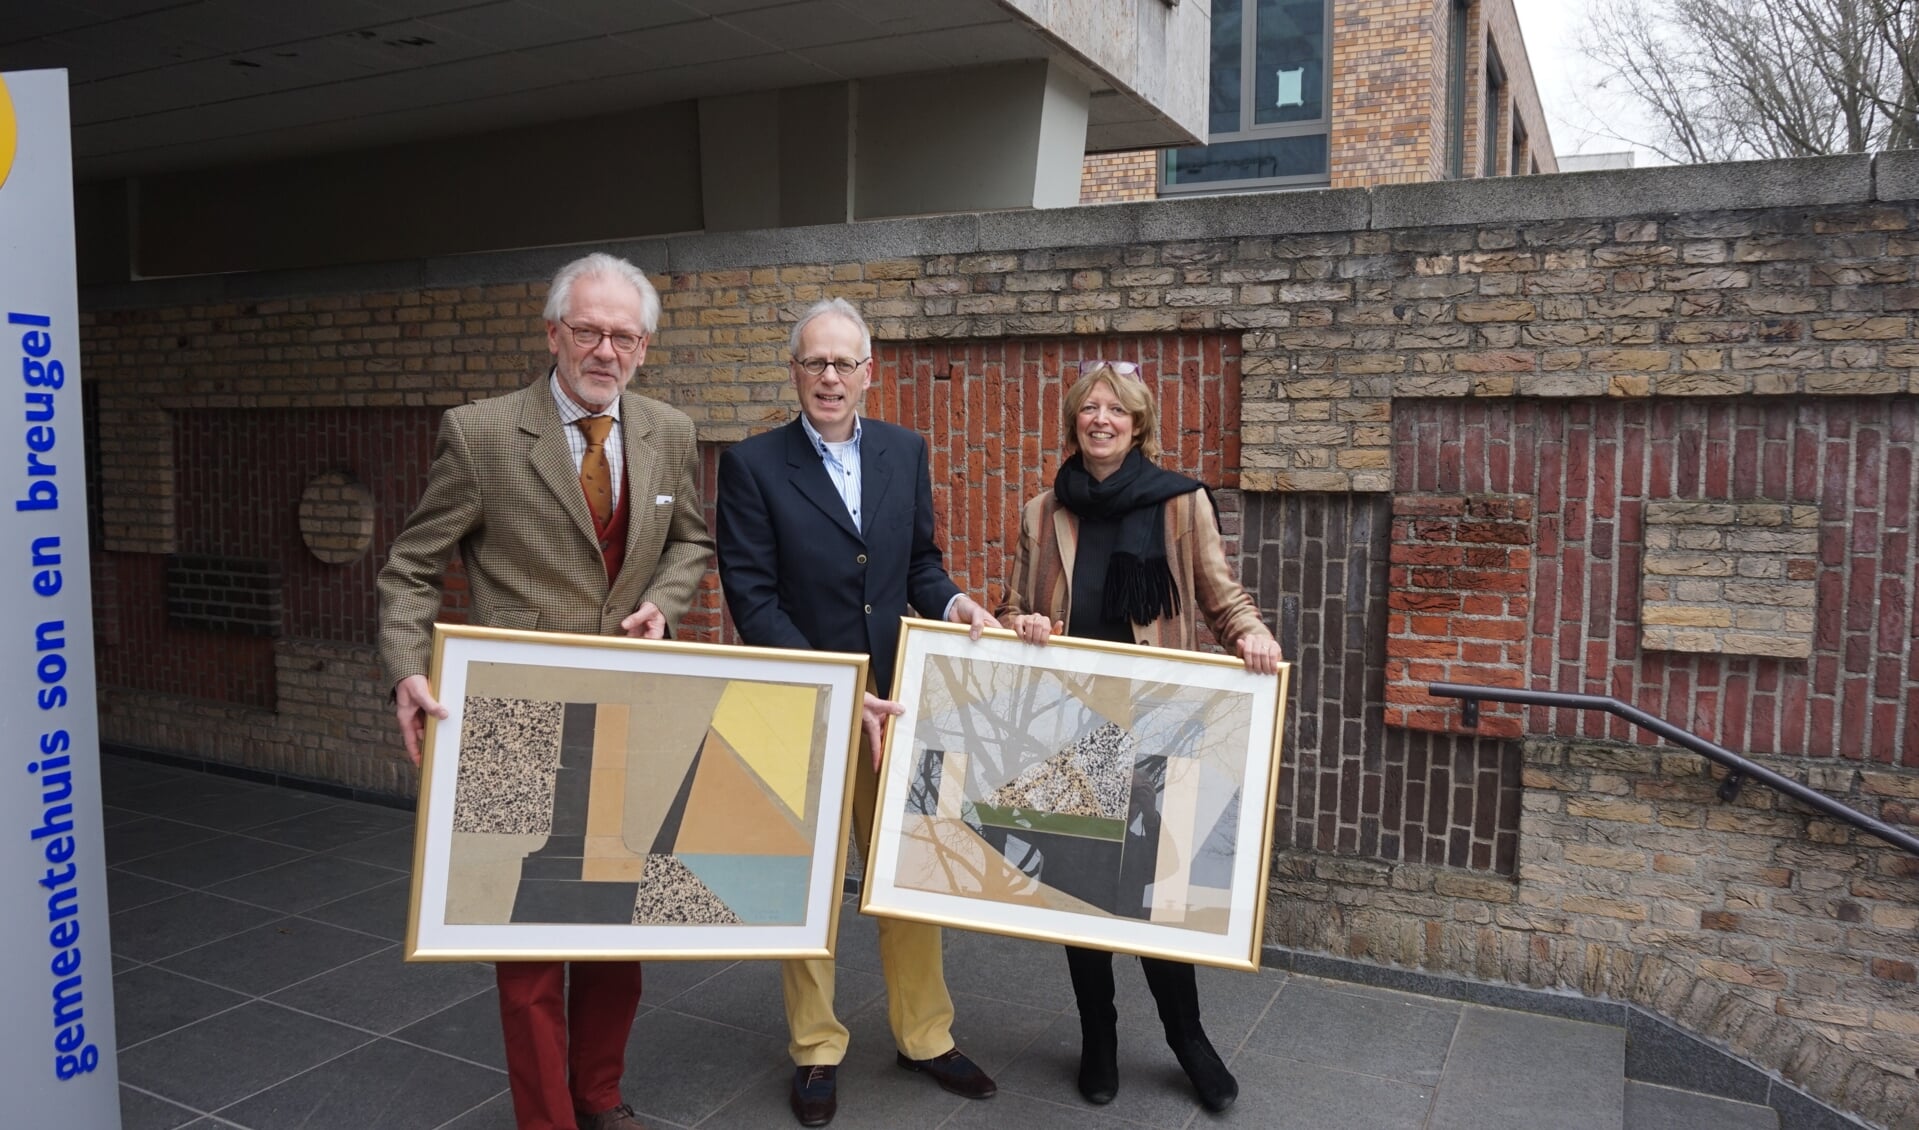 Burgemeester Hans Gaillard ontvangt de beide werken van Theo van Amstel uit handen van Frans en Petra van Straaten. Op de achtergrond het reliëf van het bordes van het gemeentehuis, eveneens van de hand van Theo van Amstel